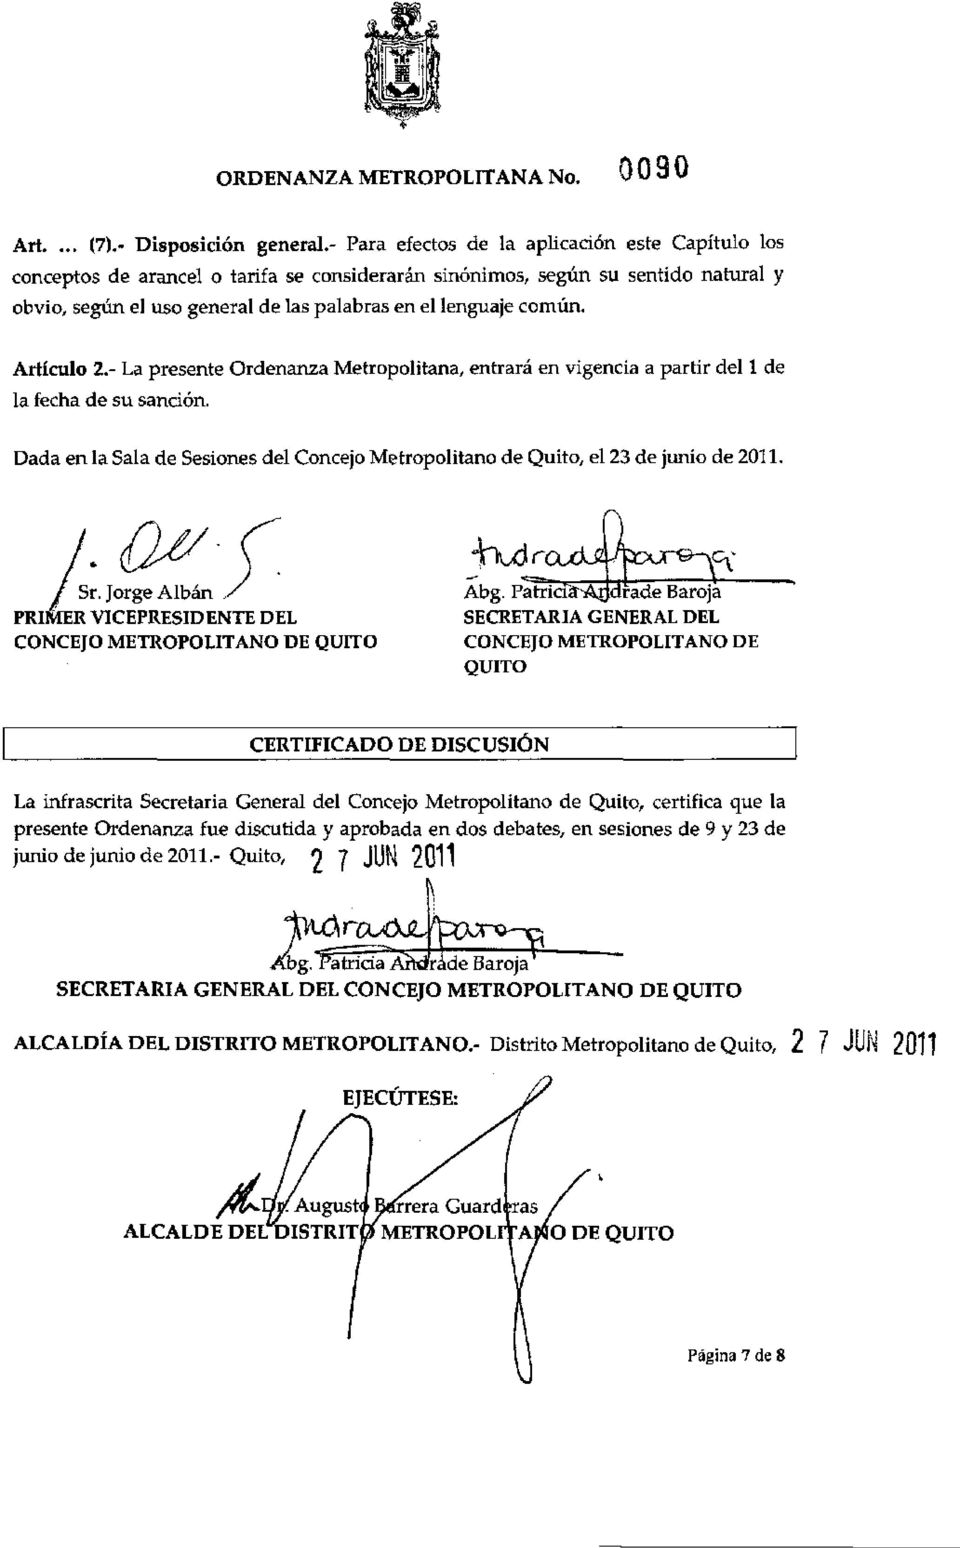 Artículo 2.- La presente Ordenanza Metropolitana, entrará en vigencia a partir del 1 de la fecha de su sanción. Dada en la Sala de Sesiones del Concejo Metropolitano de Quito, el 23 de junio de 2011.